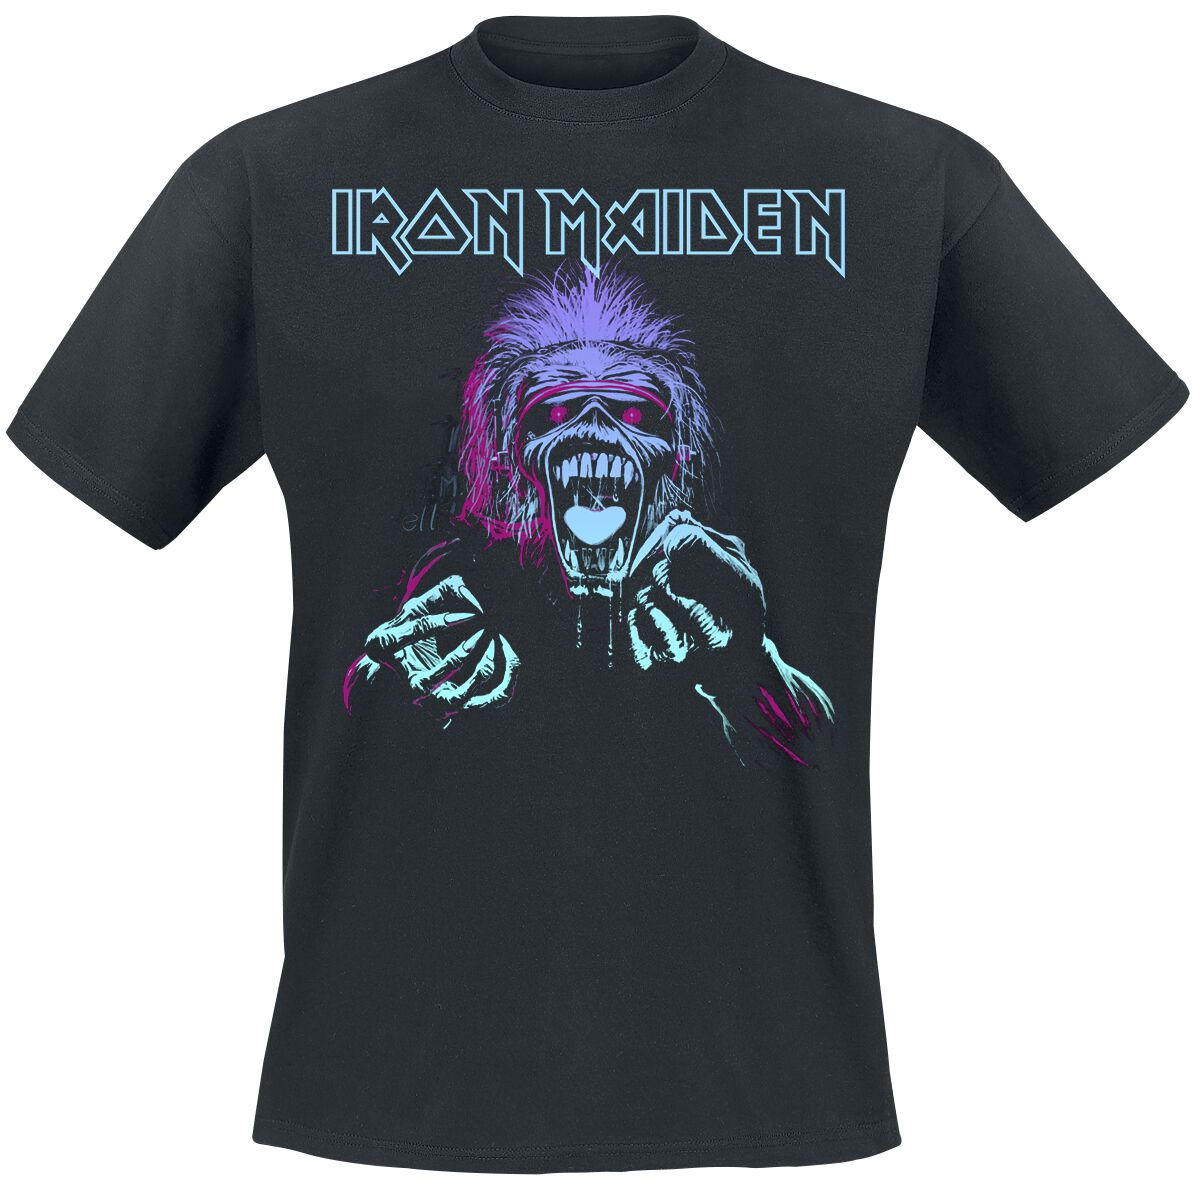 Iron Maiden T-Shirt - Pastel Eddie - S bis 4XL - für Männer - Größe 4XL - schwarz  - Lizenziertes Merchandise!